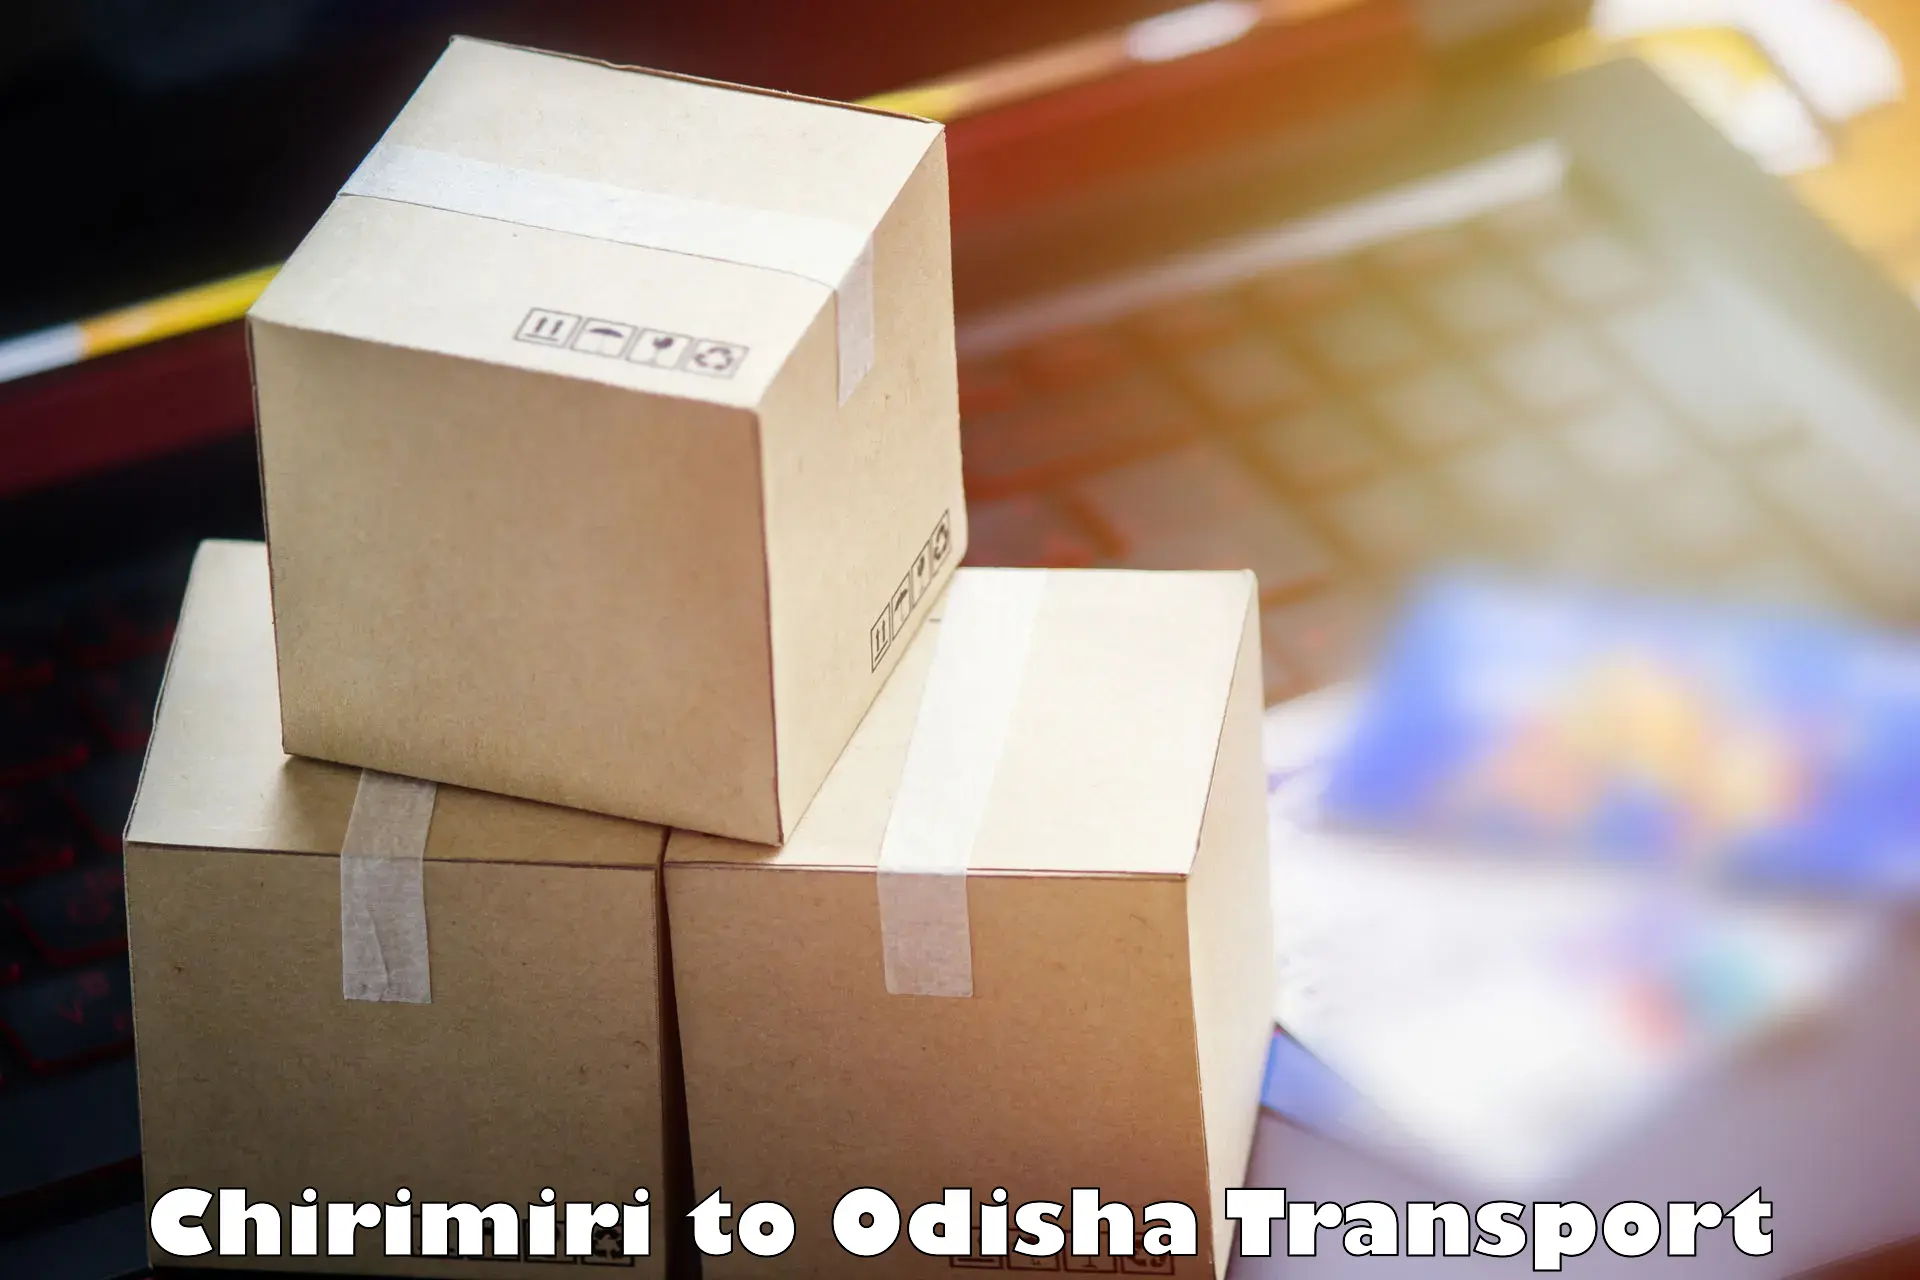 Pick up transport service Chirimiri to Dhamara